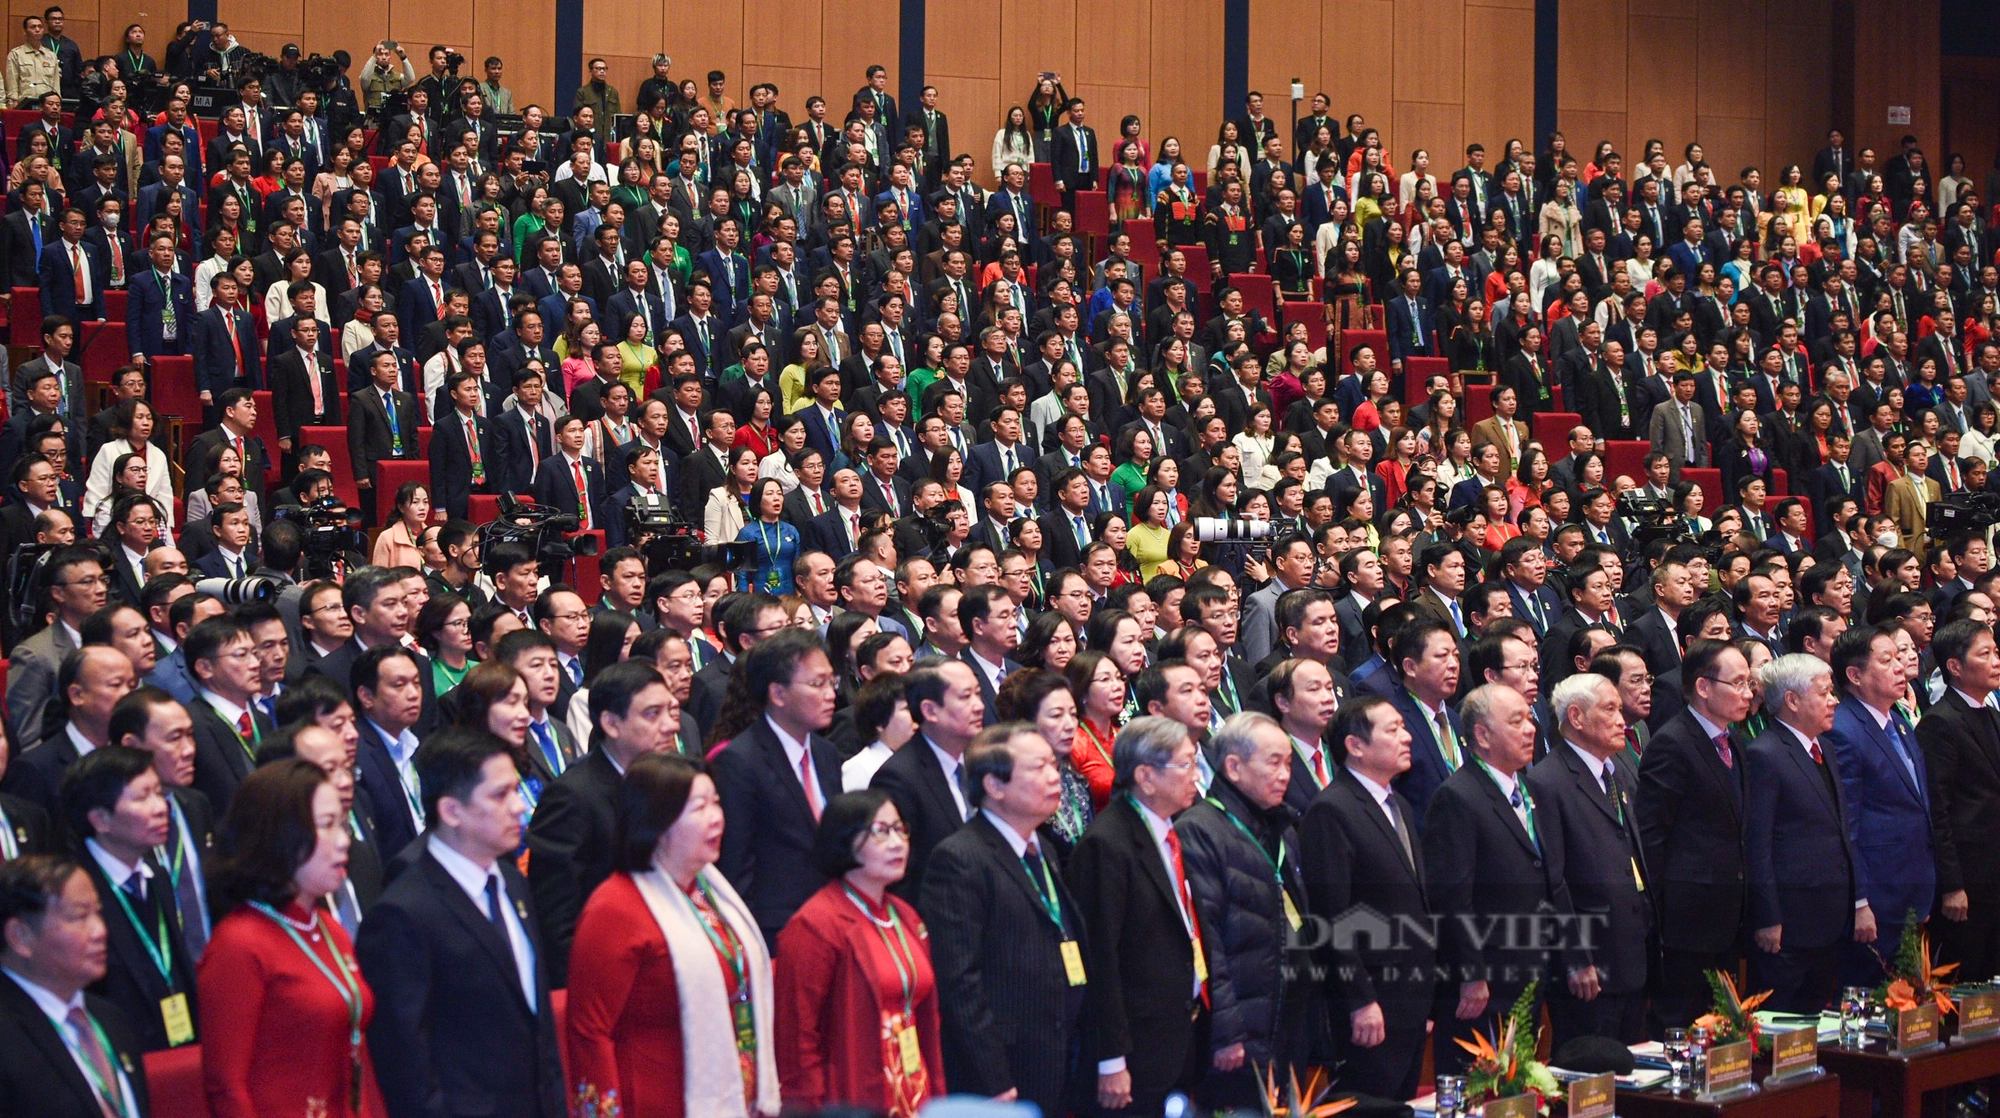 Hình ảnh khai mạc trọng thể Đại hội đại biểu toàn quốc Hội Nông dân Việt Nam lần thứ VIII- Ảnh 4.